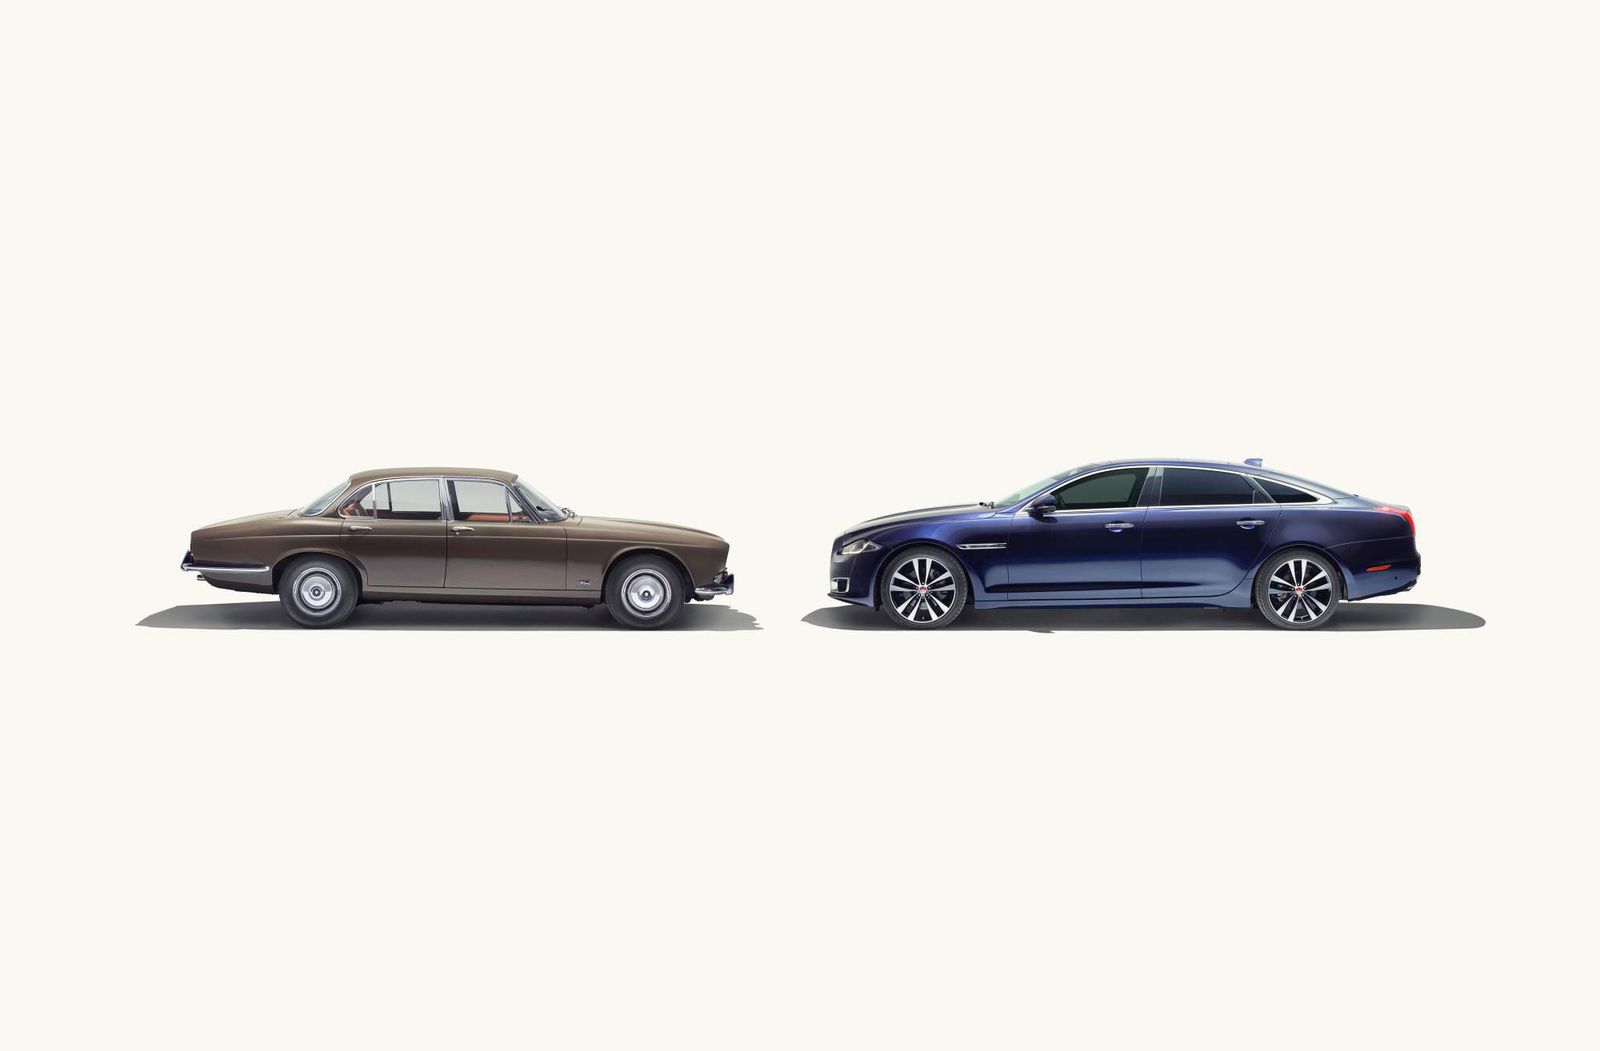 2019-Jaguar-XJ50-and-its-predecessors-1